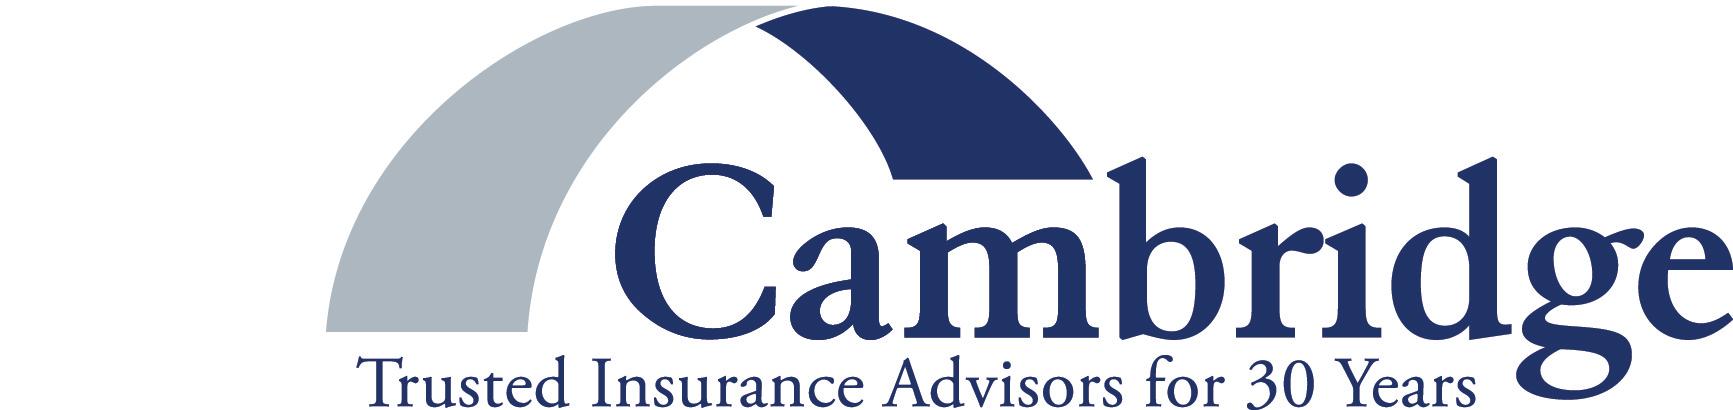 Cambridge Insurance Advisors - New York, NY